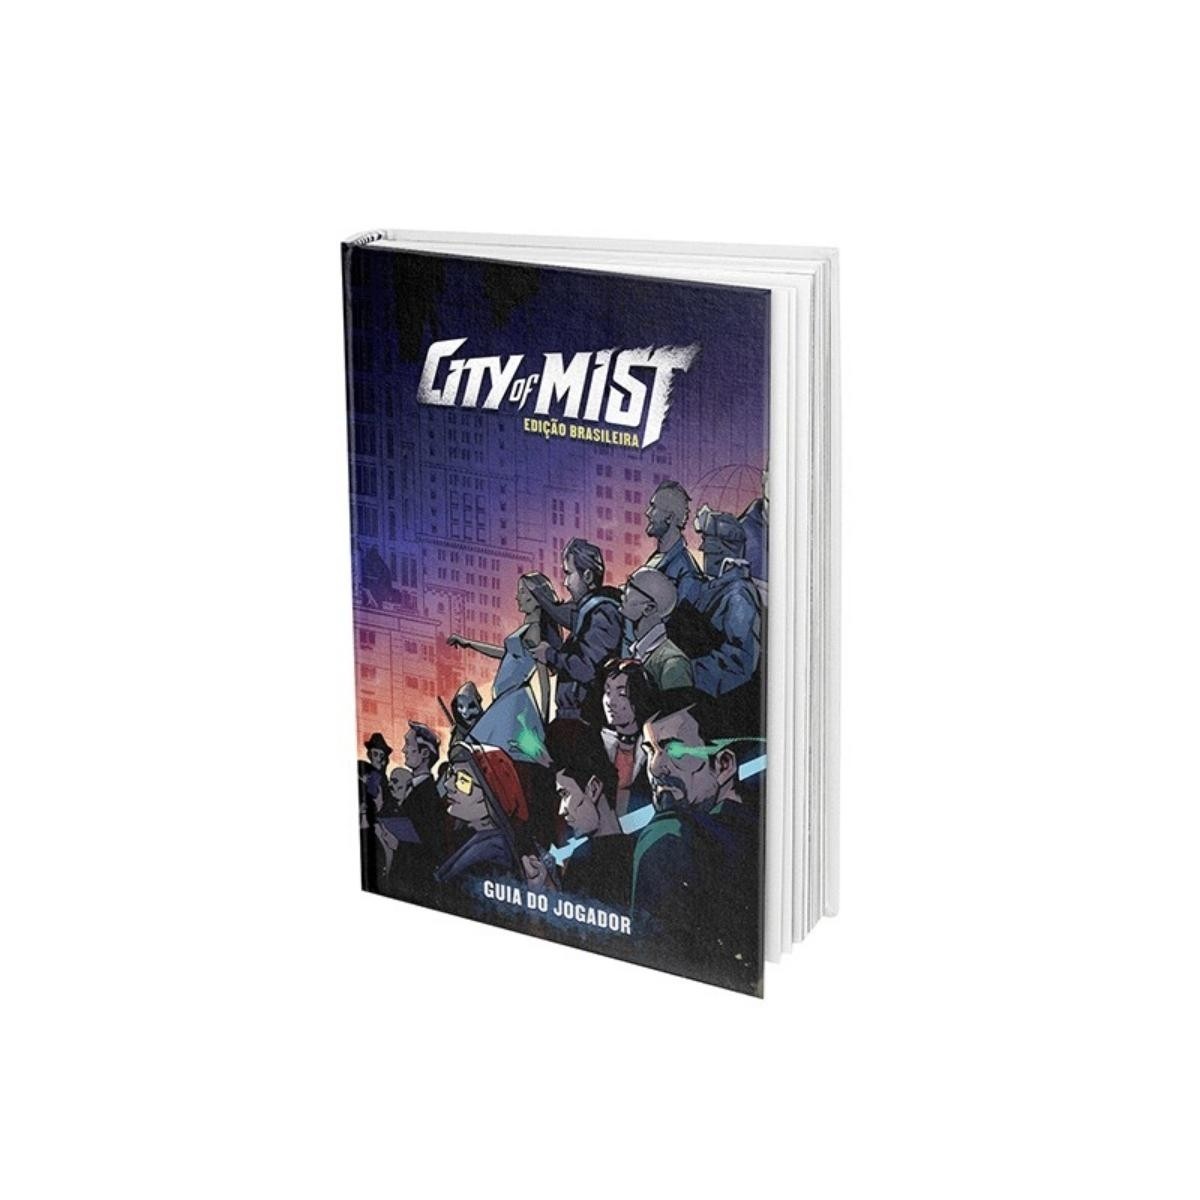  City of Mist: Guia do Jogador Ed. Brasileira - RPG - Retropunk 